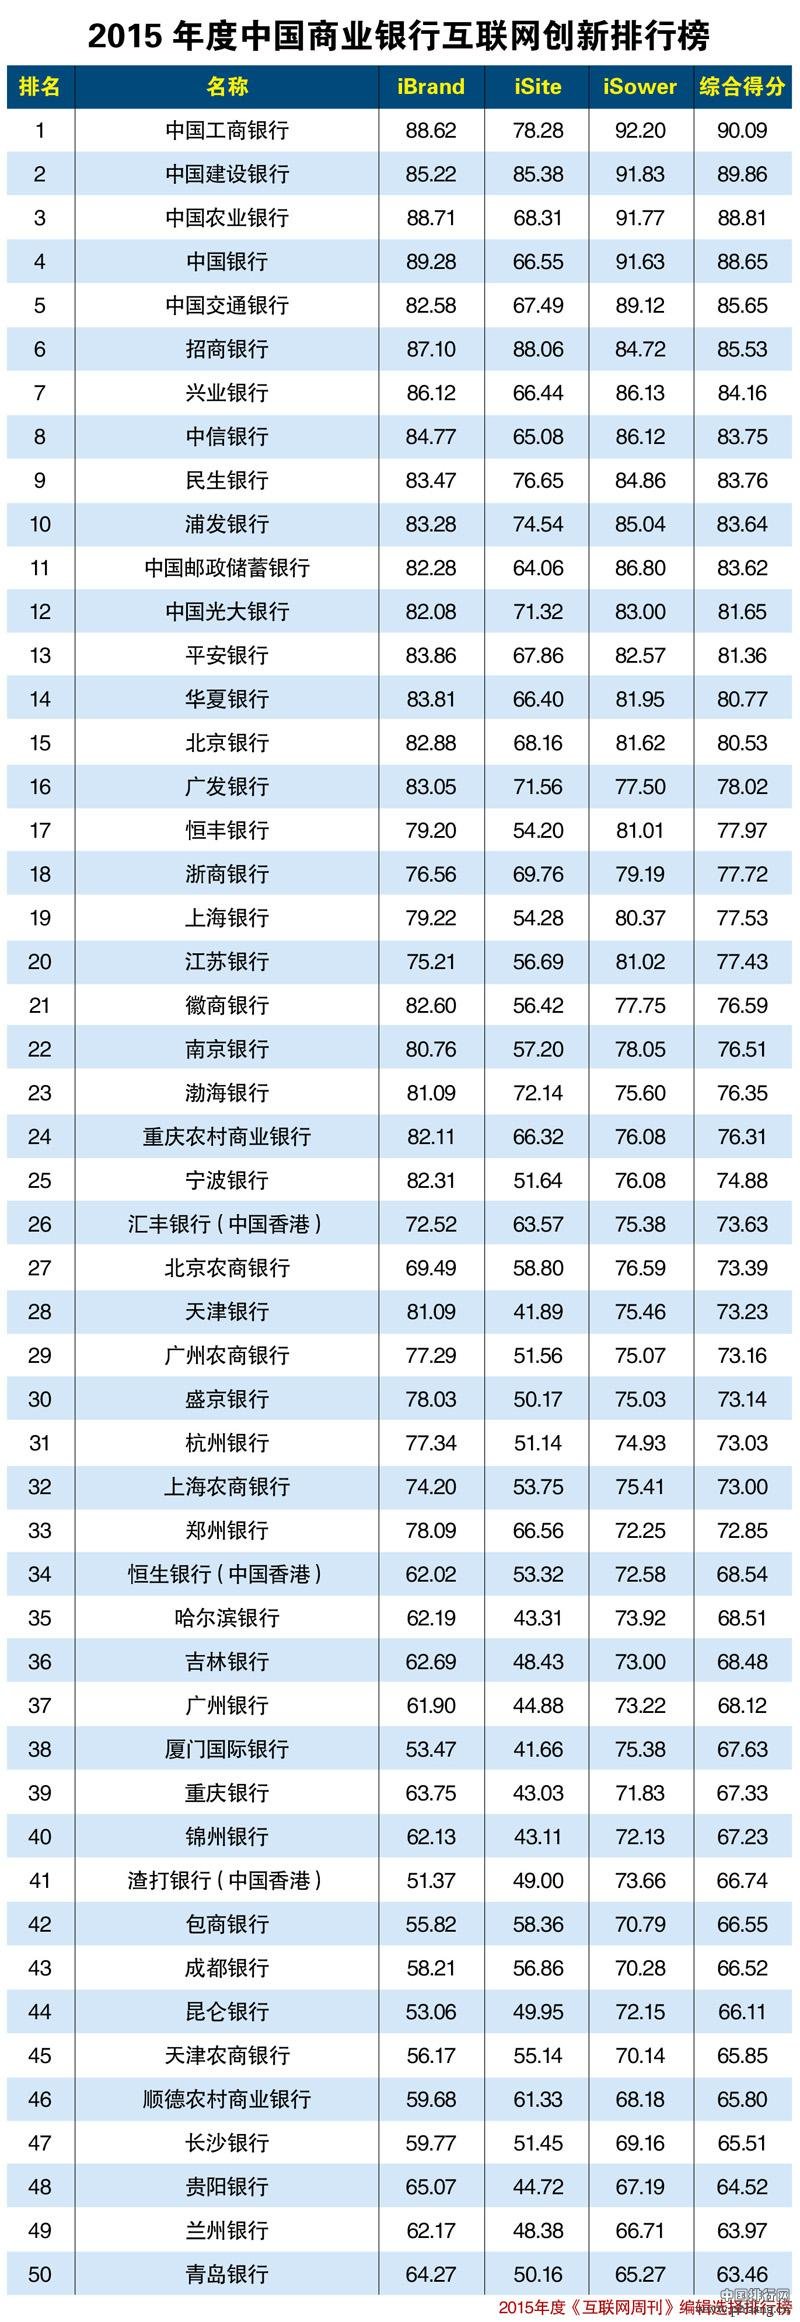 2015年度中国商业银行互联网创新排行榜